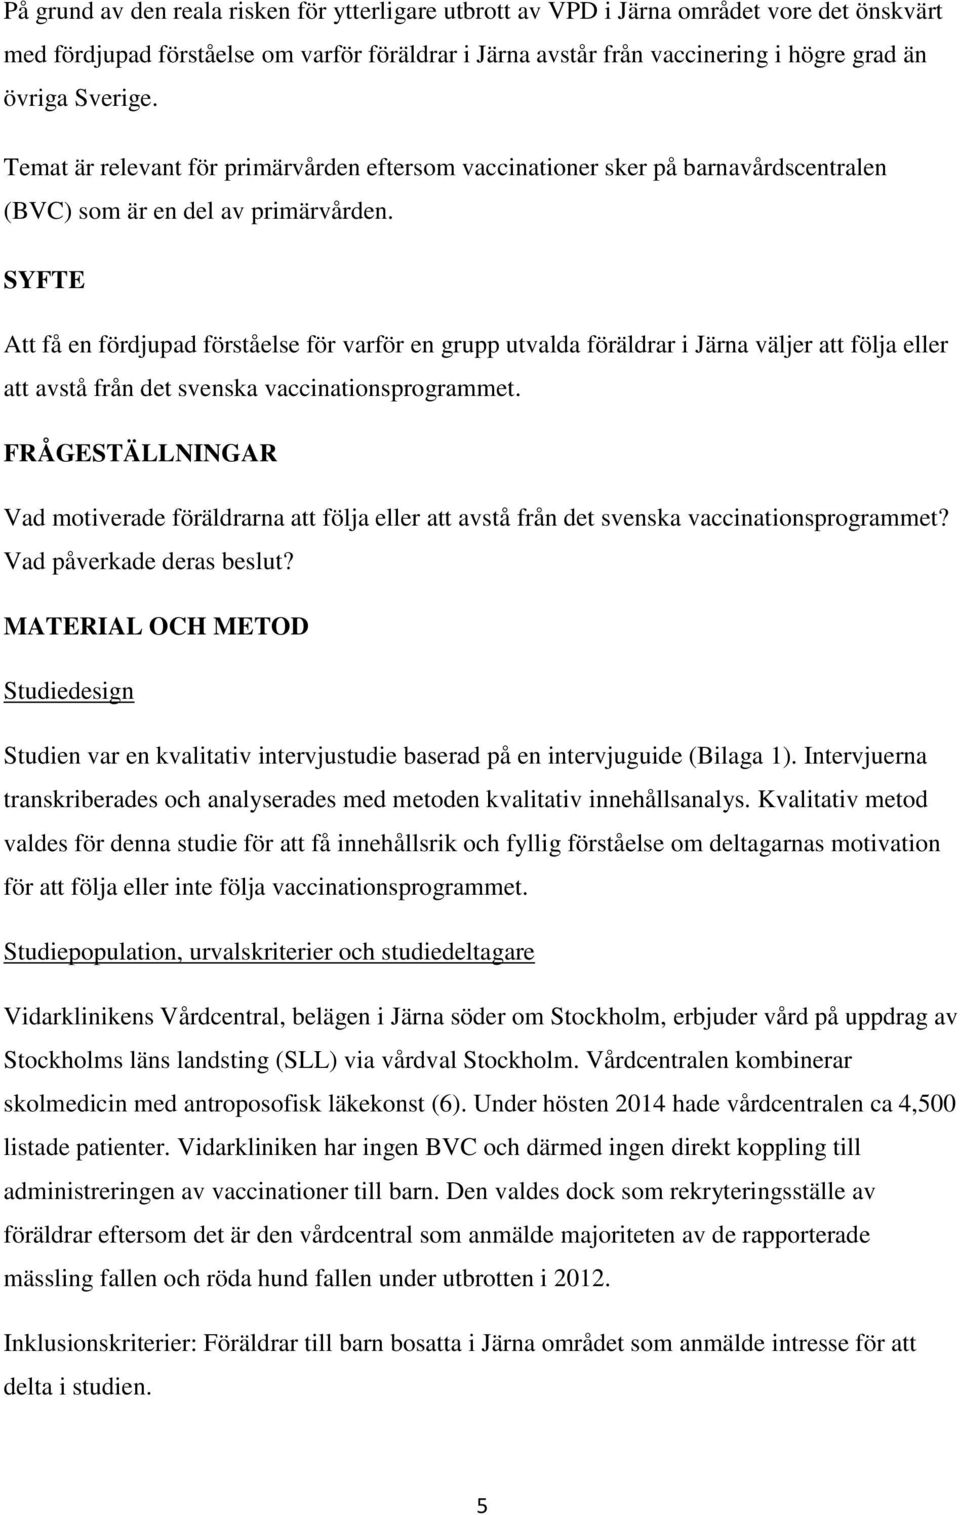 SYFTE Att få en fördjupad förståelse för varför en grupp utvalda föräldrar i Järna väljer att följa eller att avstå från det svenska vaccinationsprogrammet.